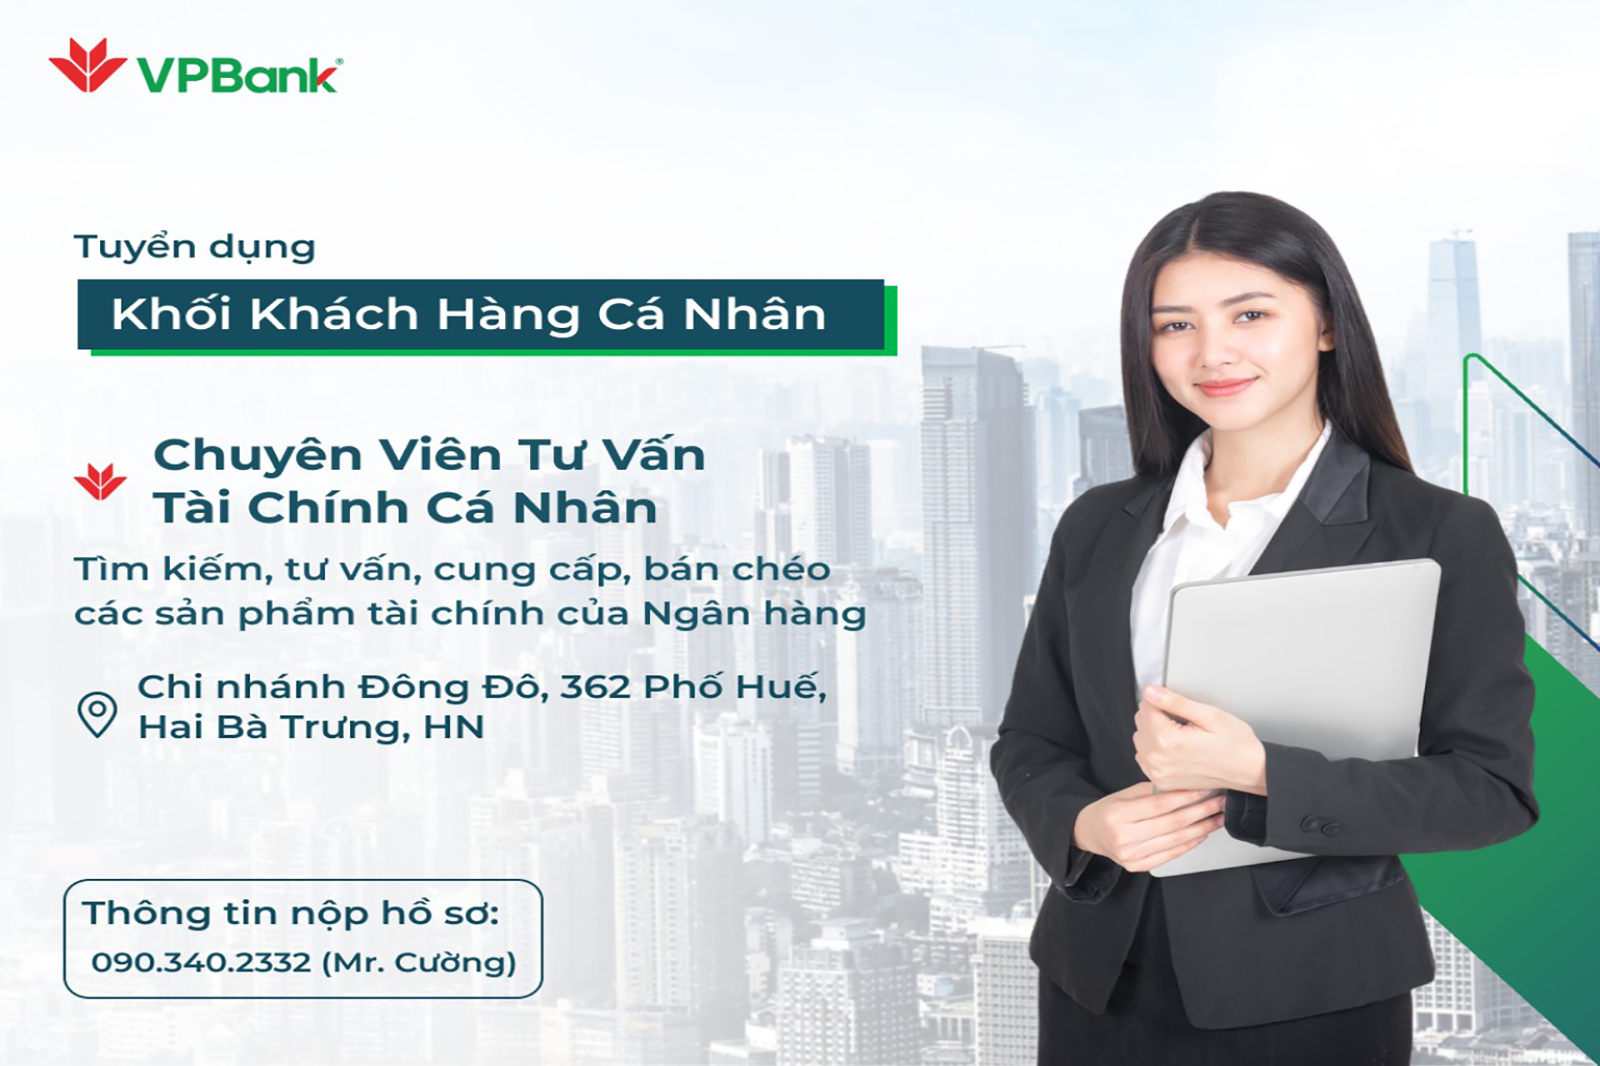 VPBank Đông Đô tuyển dụng  Chuyên viên tư vấn tài chính cá nhân